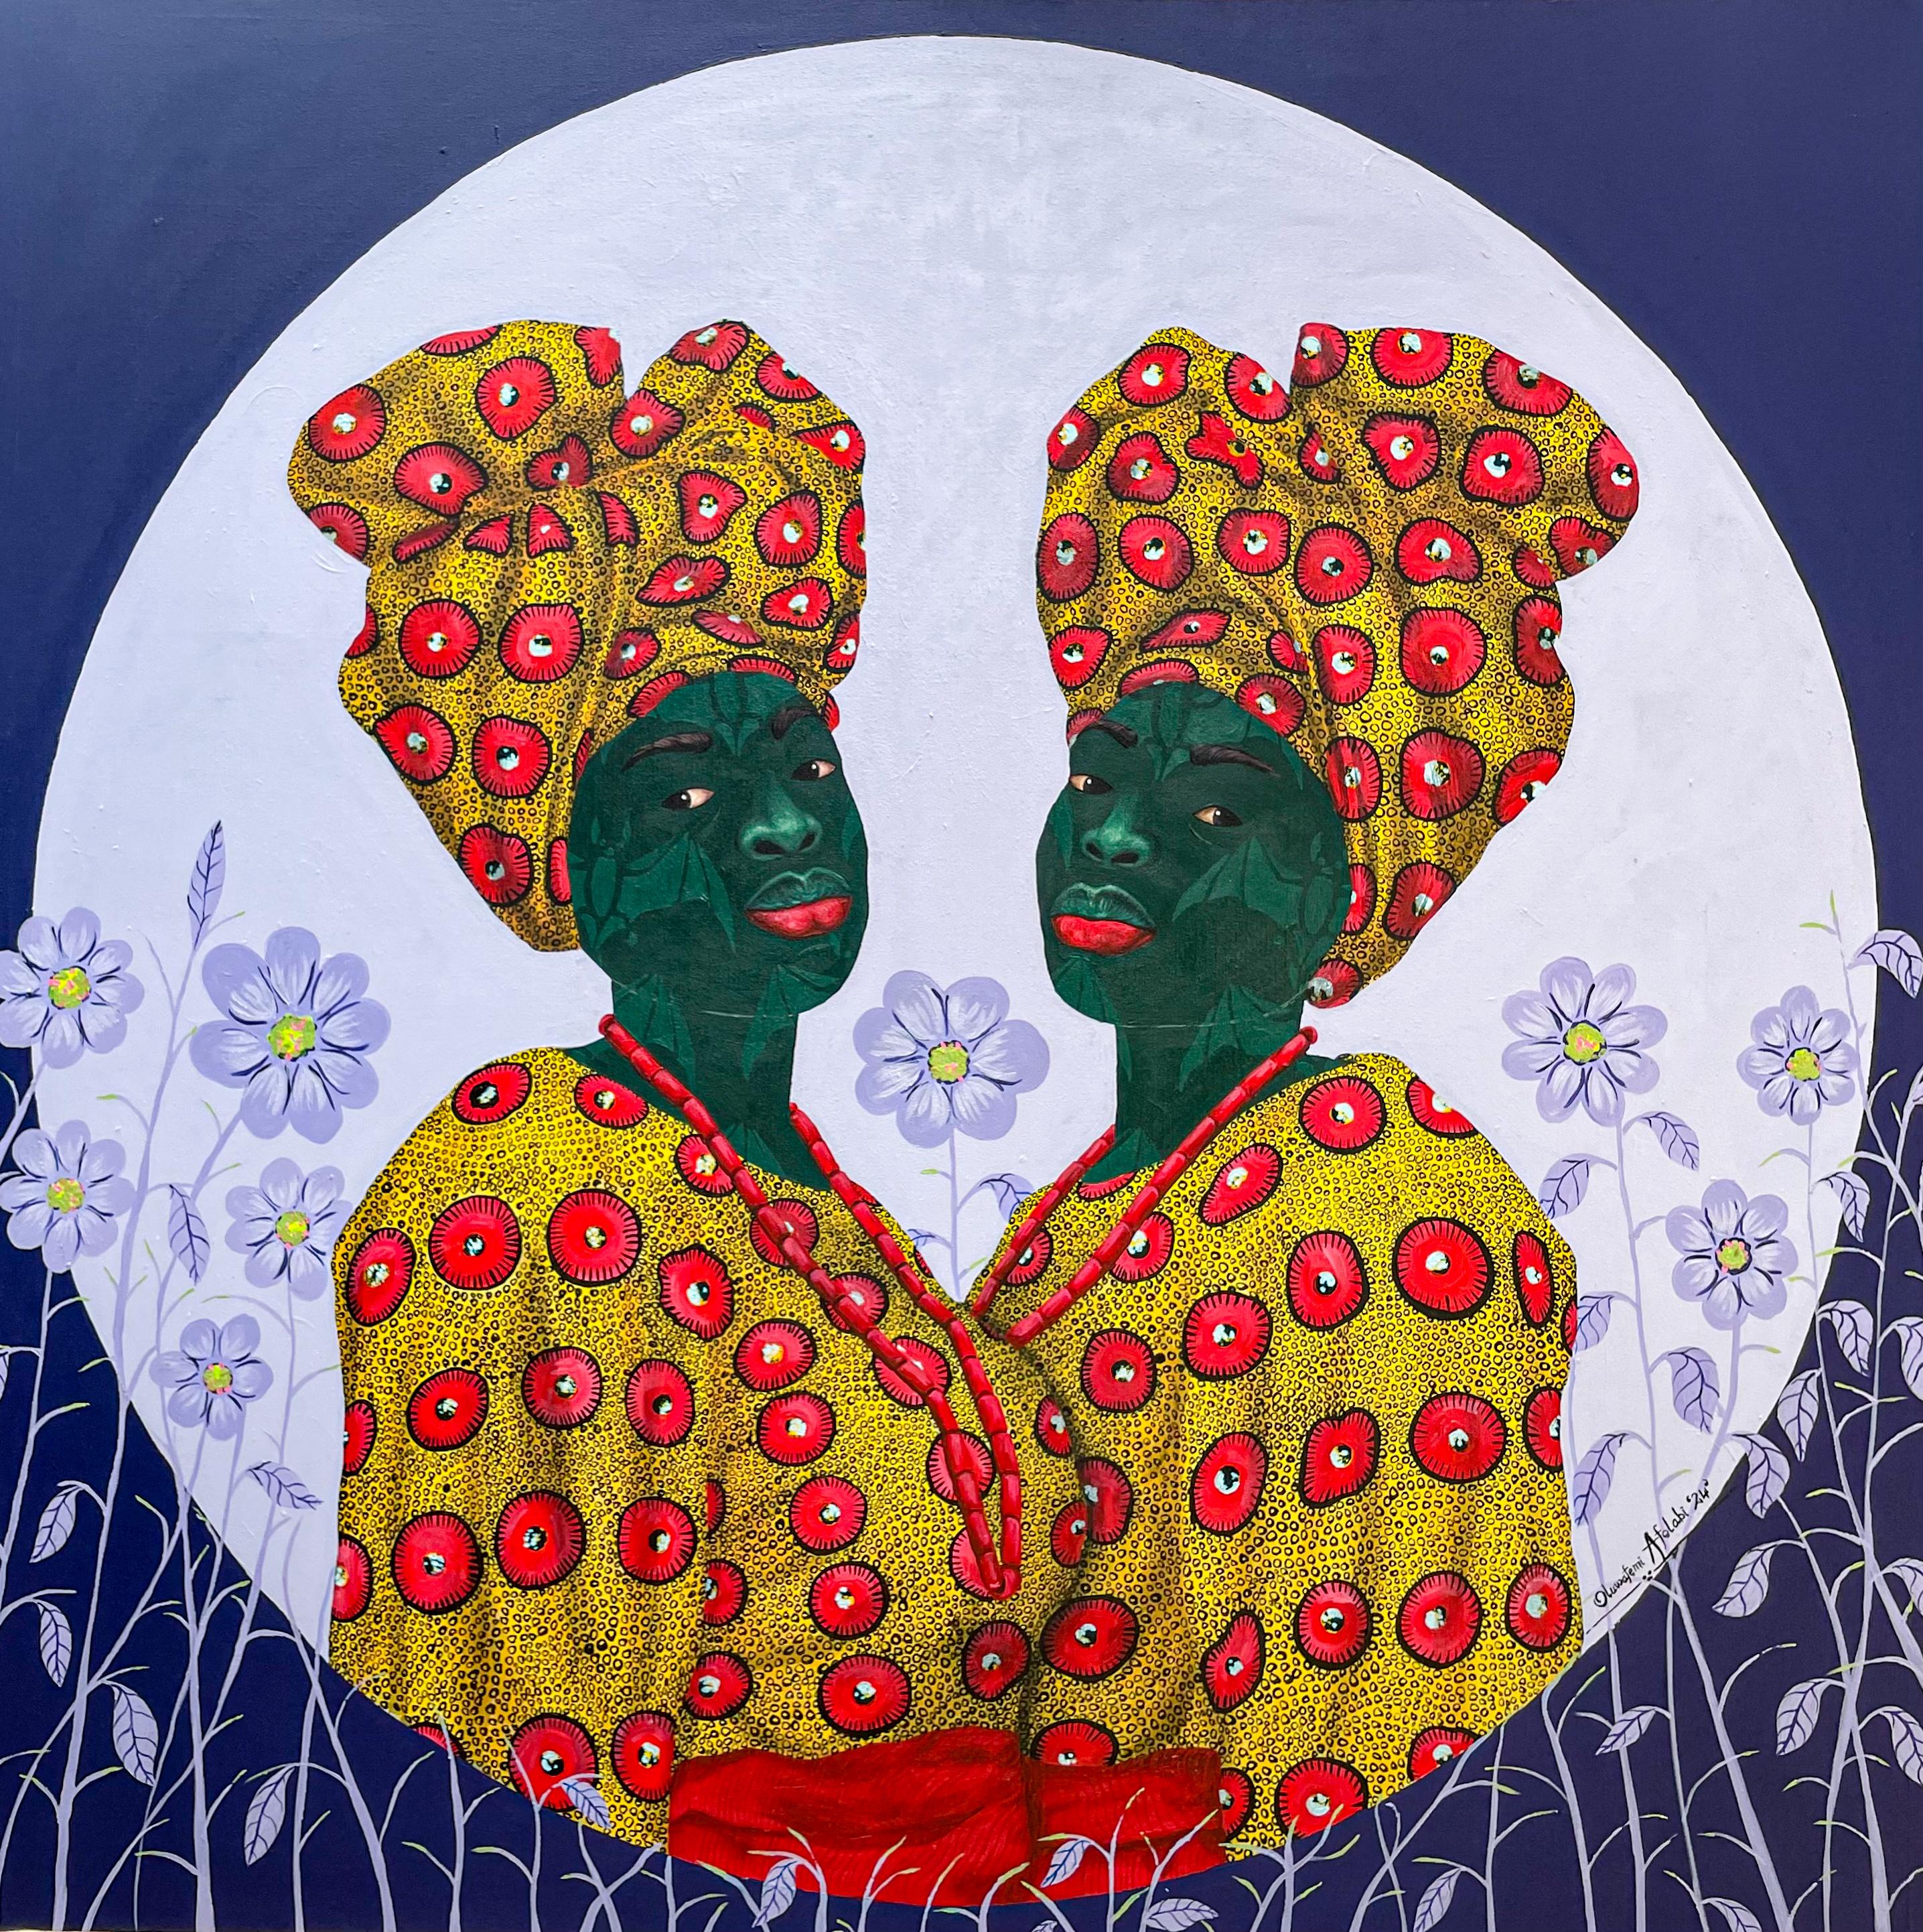 Oluwafemi Afolabi Figurative Painting - Sisters in Yellow 2